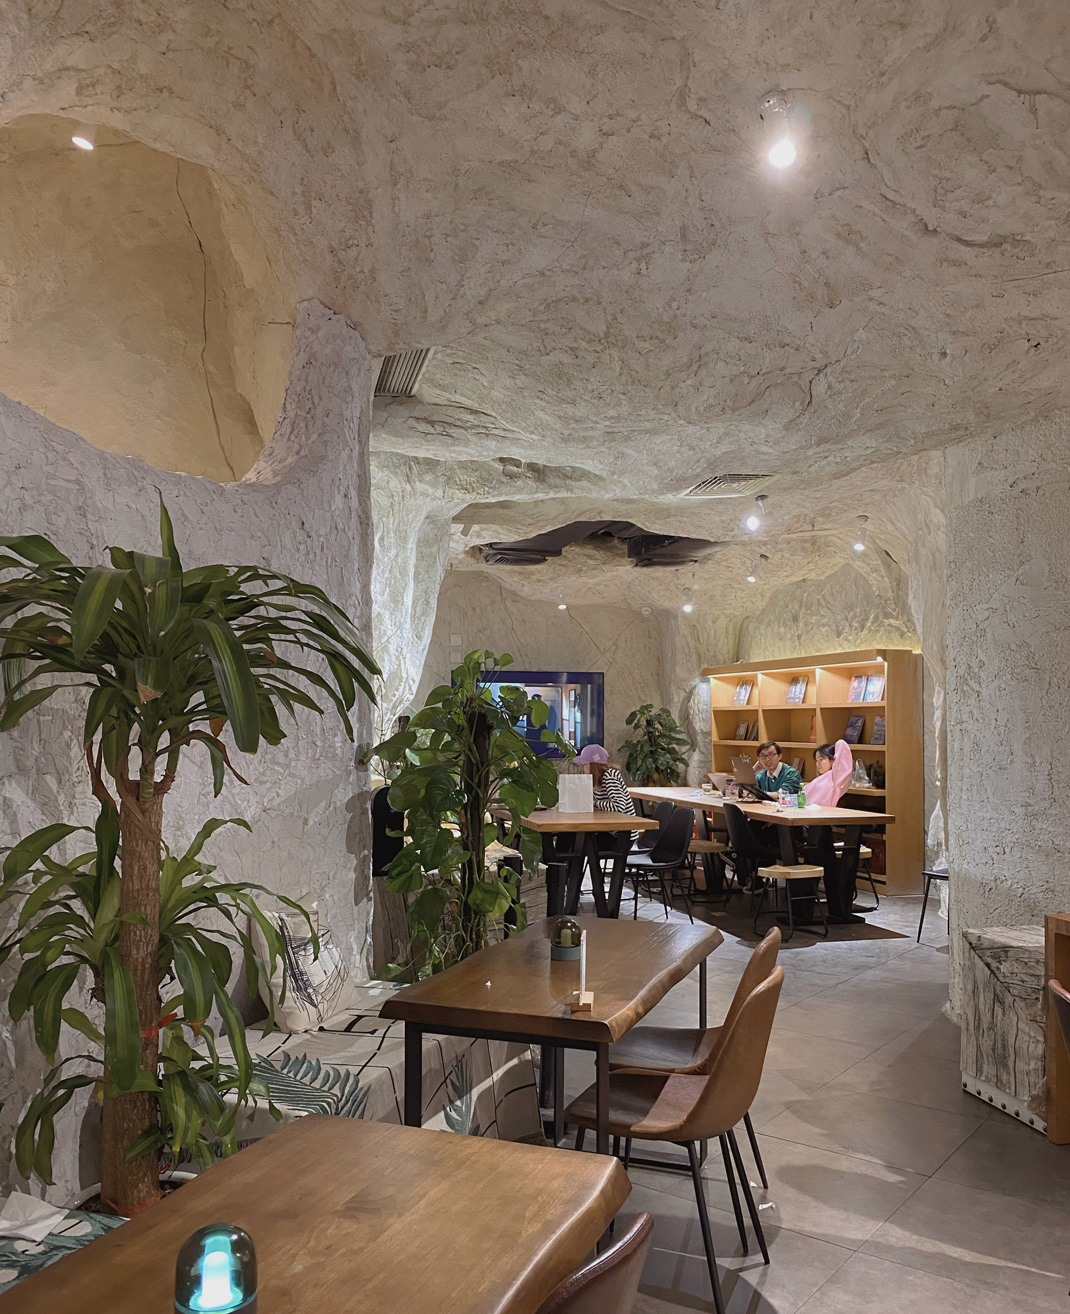 地理学家咖啡馆 上海 咖啡馆 网红店 主题餐厅 logo设计 vi设计 空间设计